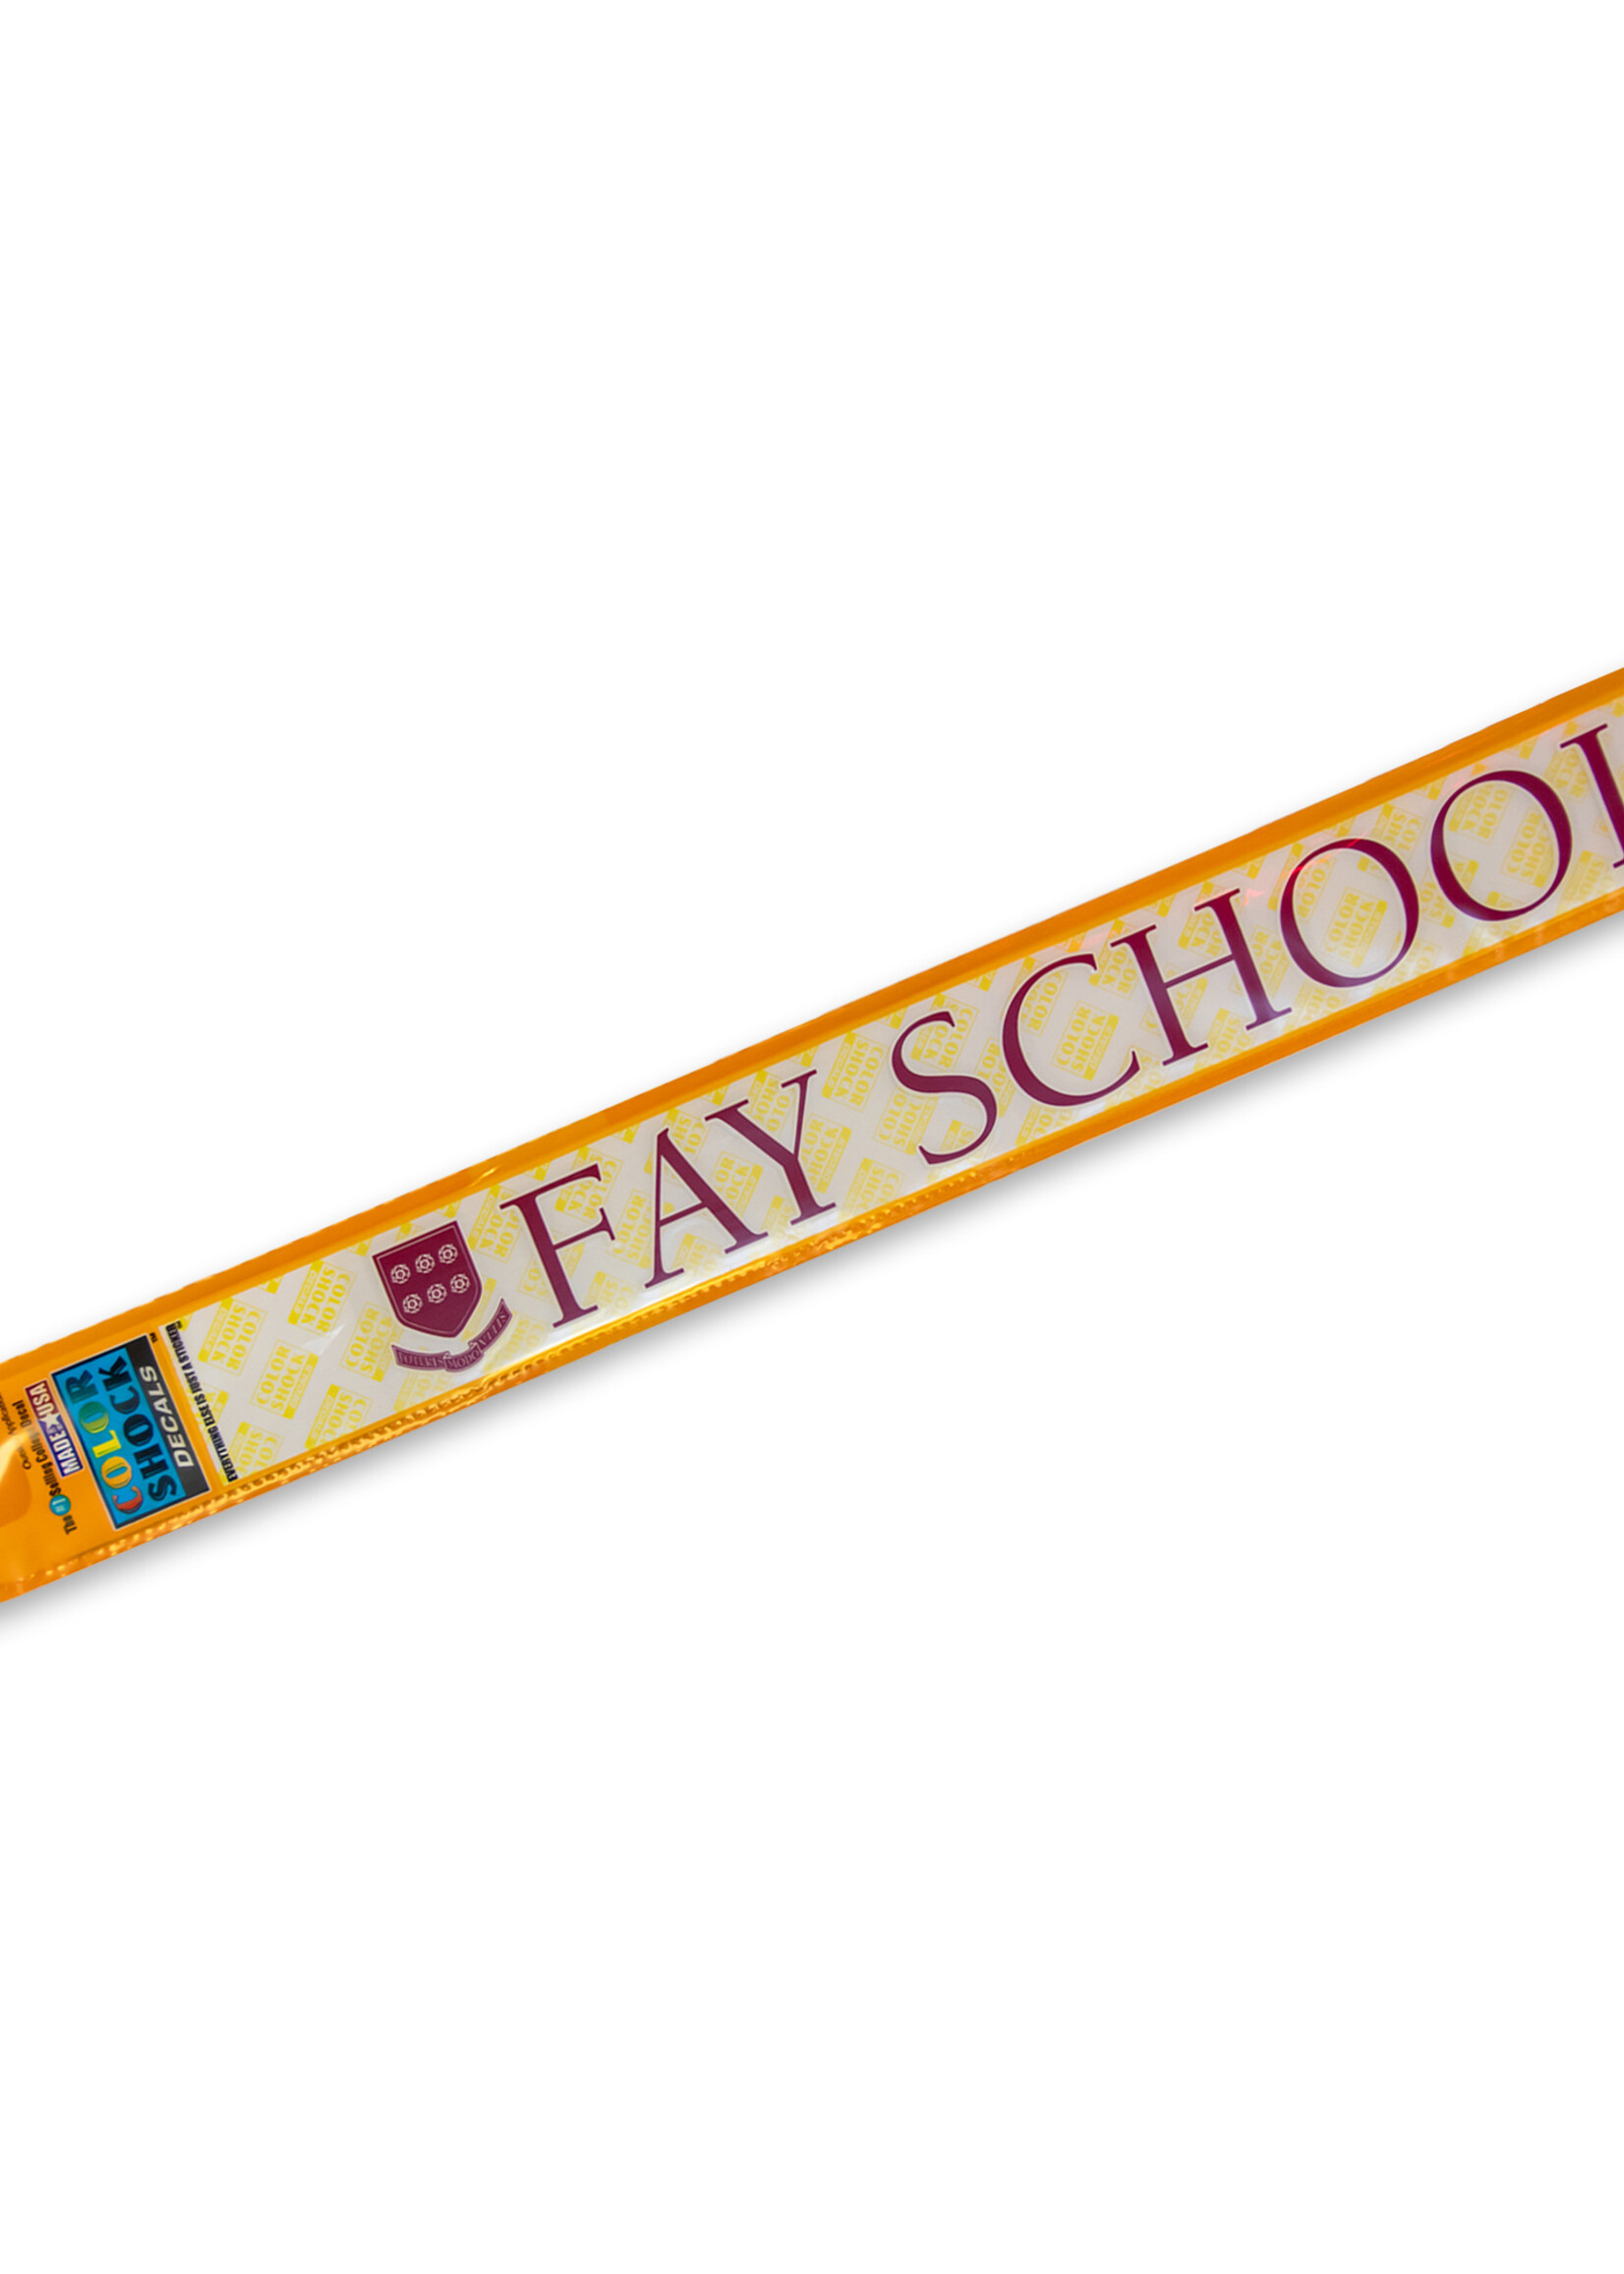 Decal FAY SCHOOL Car Sticker